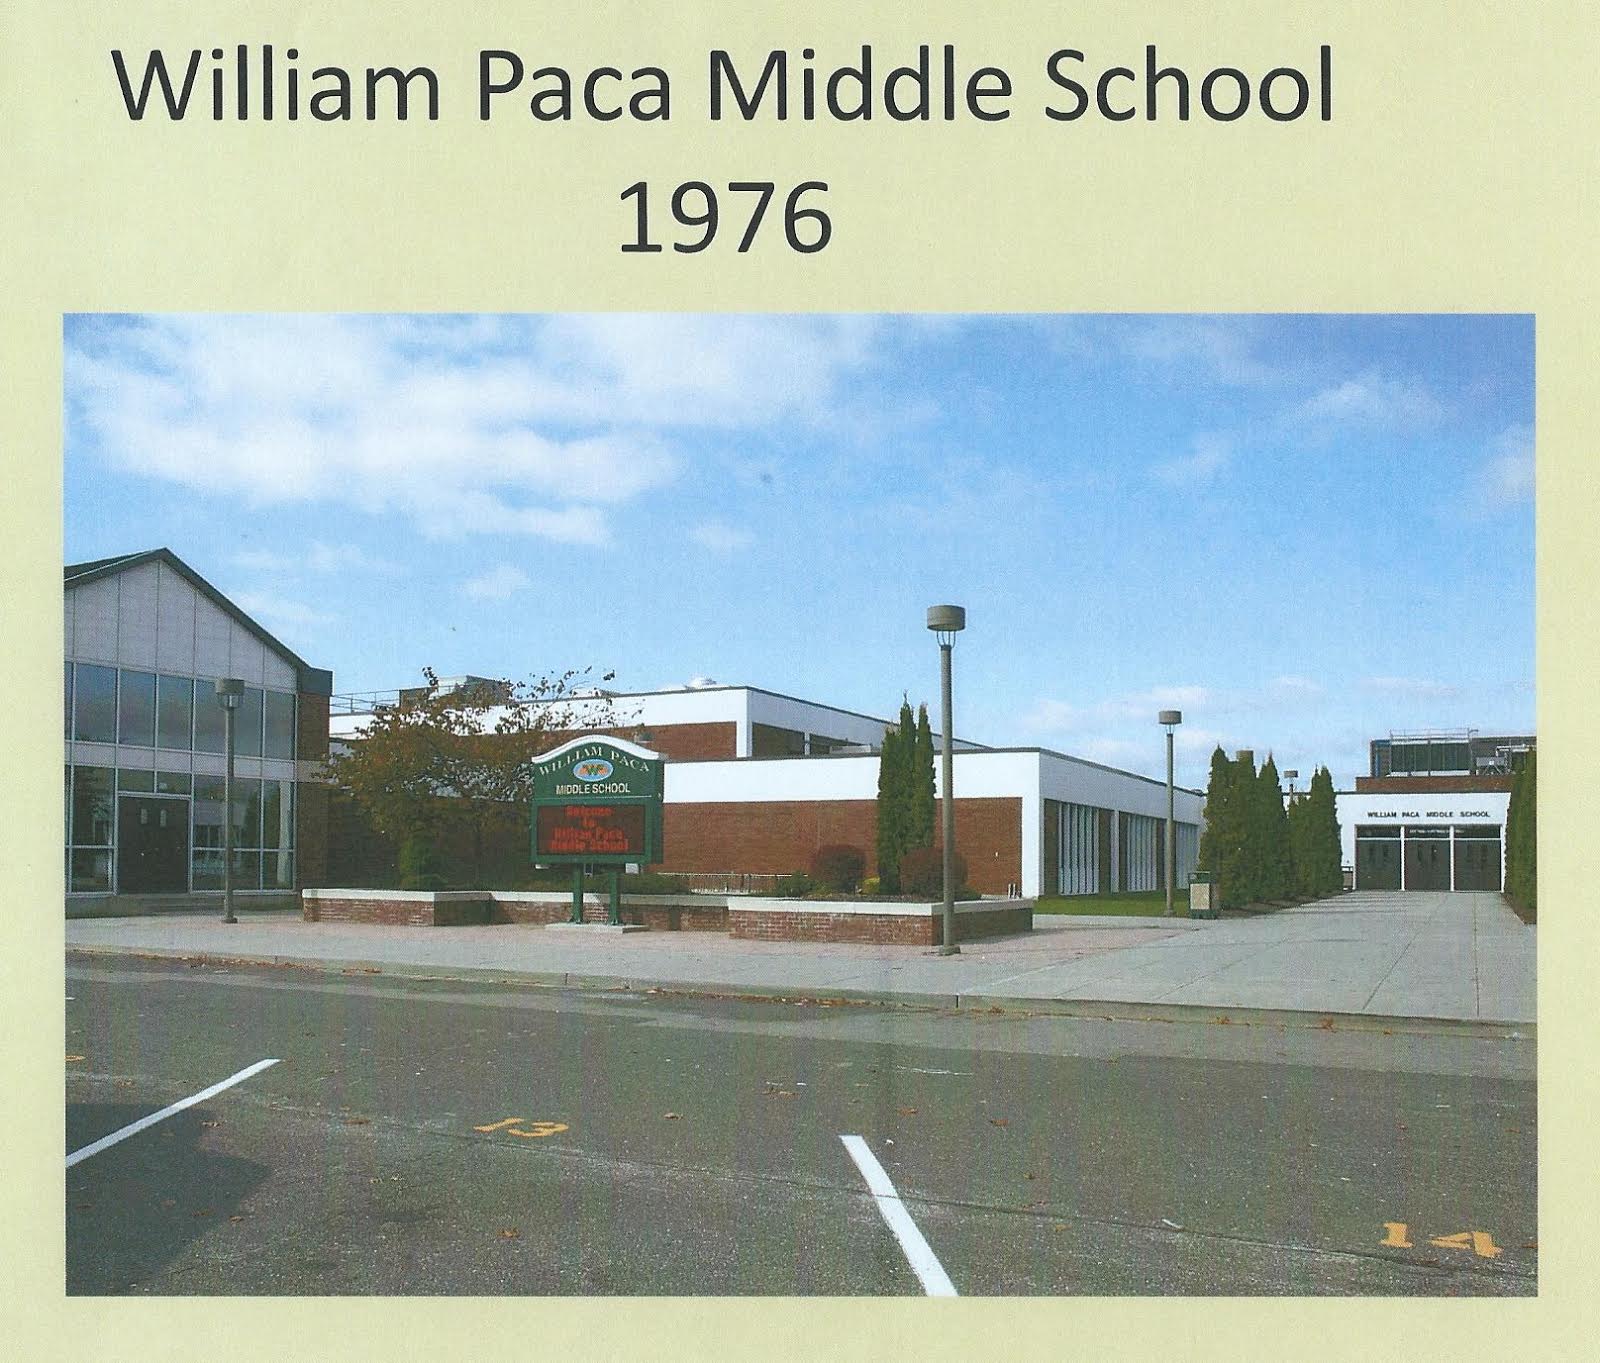 William Paca Middle School